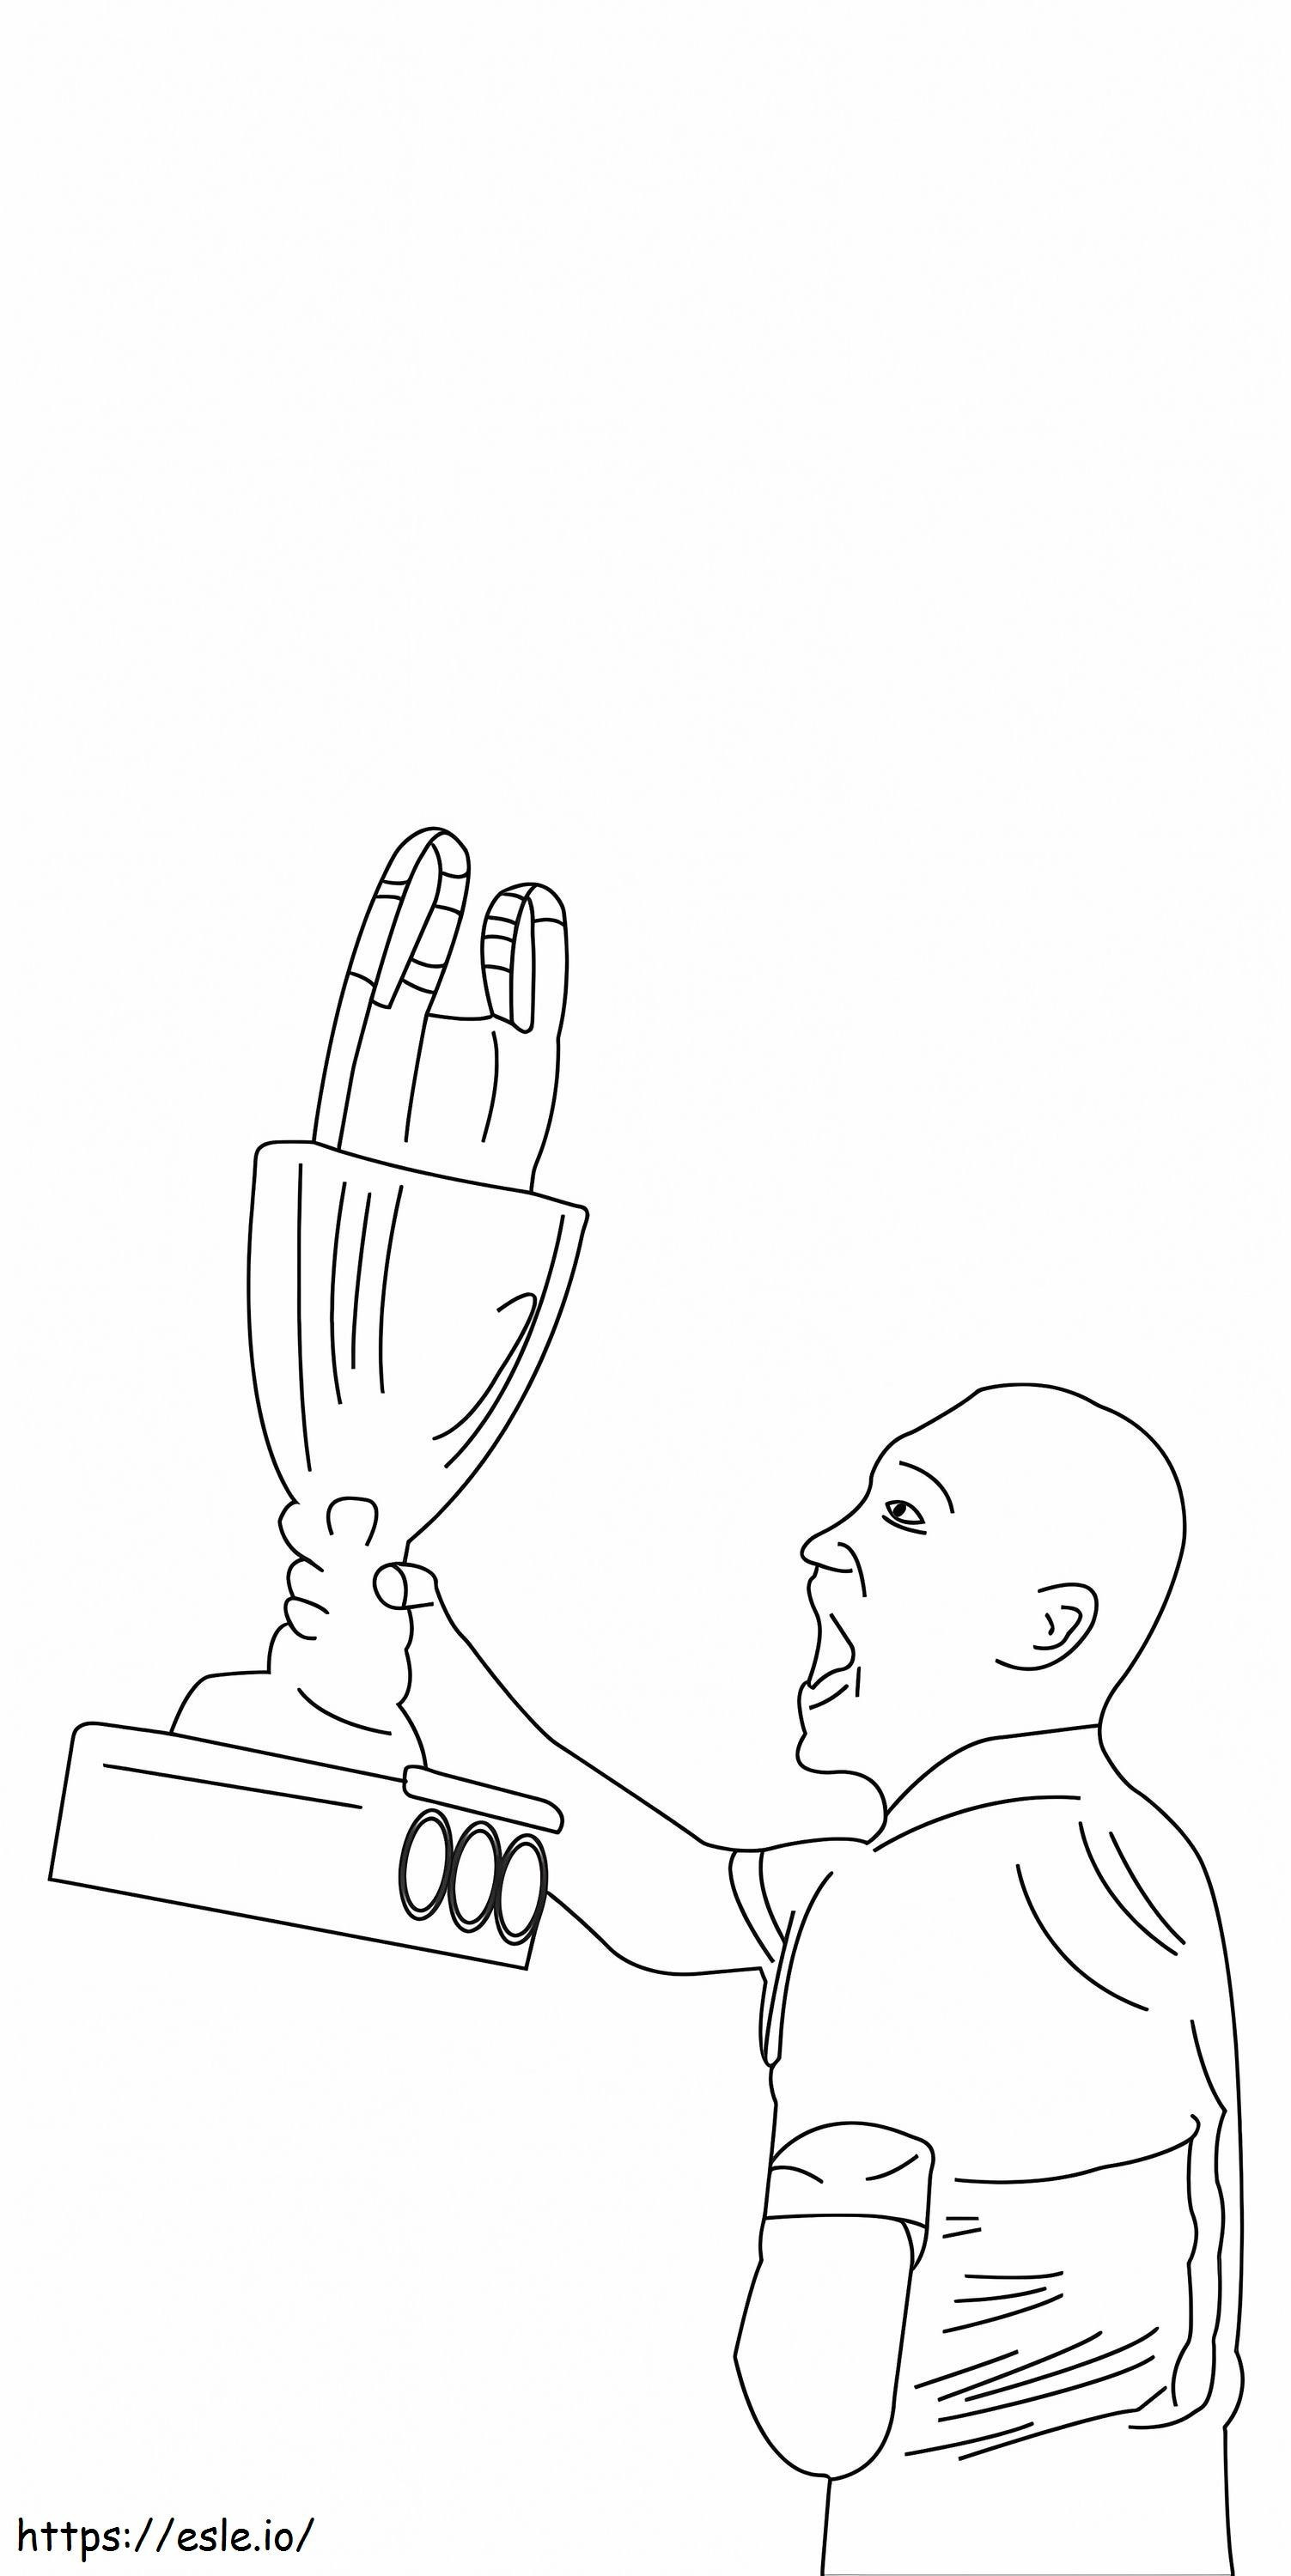 Trofeul Cupei Arabe FIFA de colorat